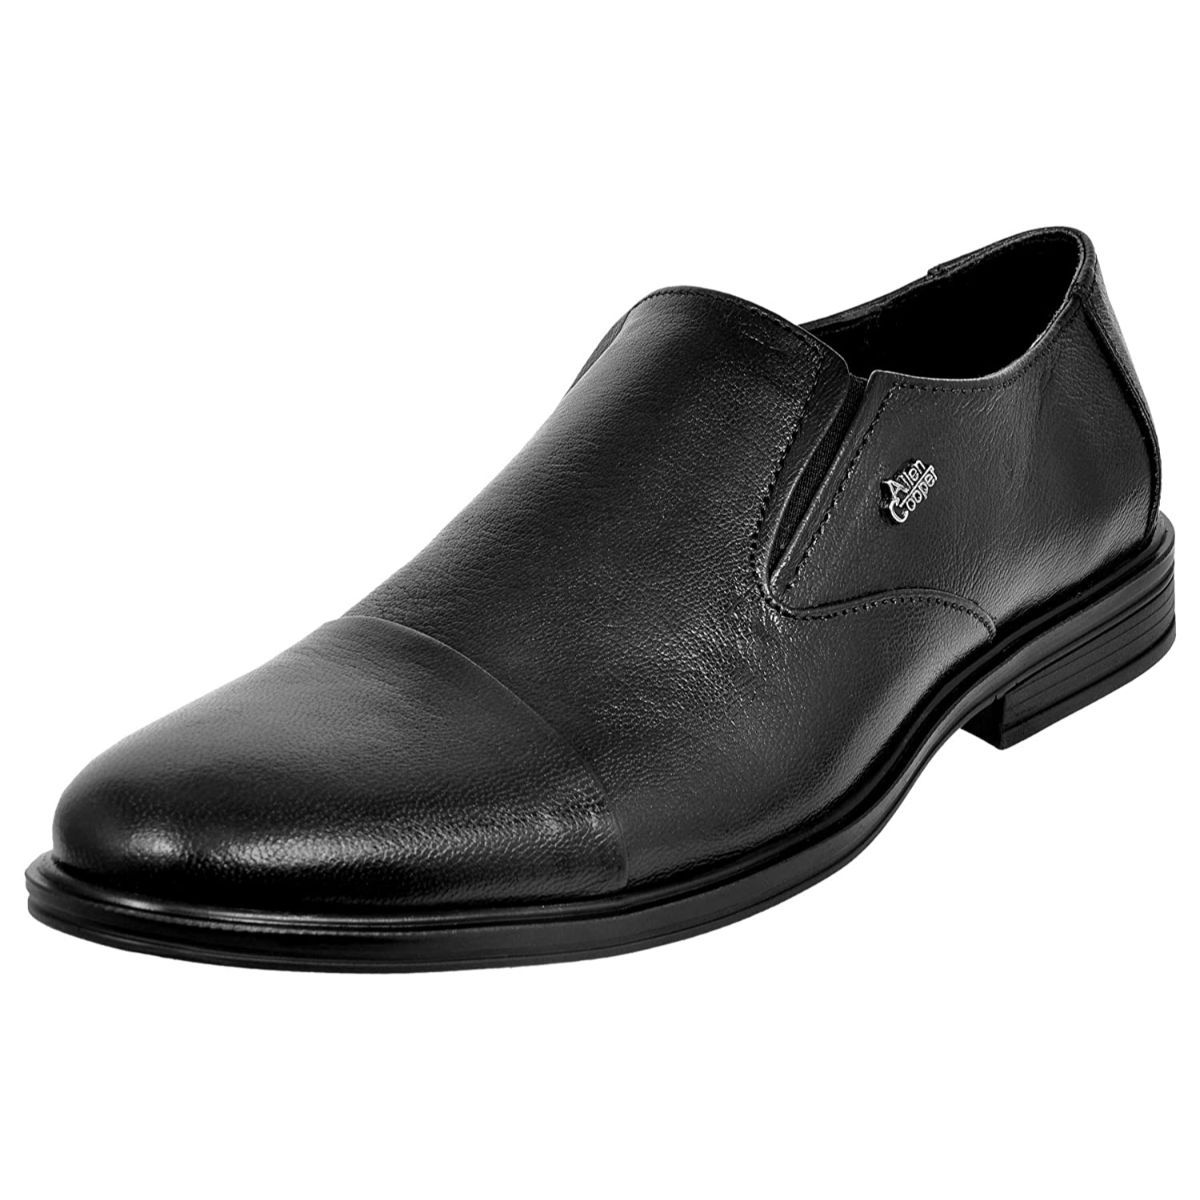 Allen Cooper Black Formal Shoes For Men - 8